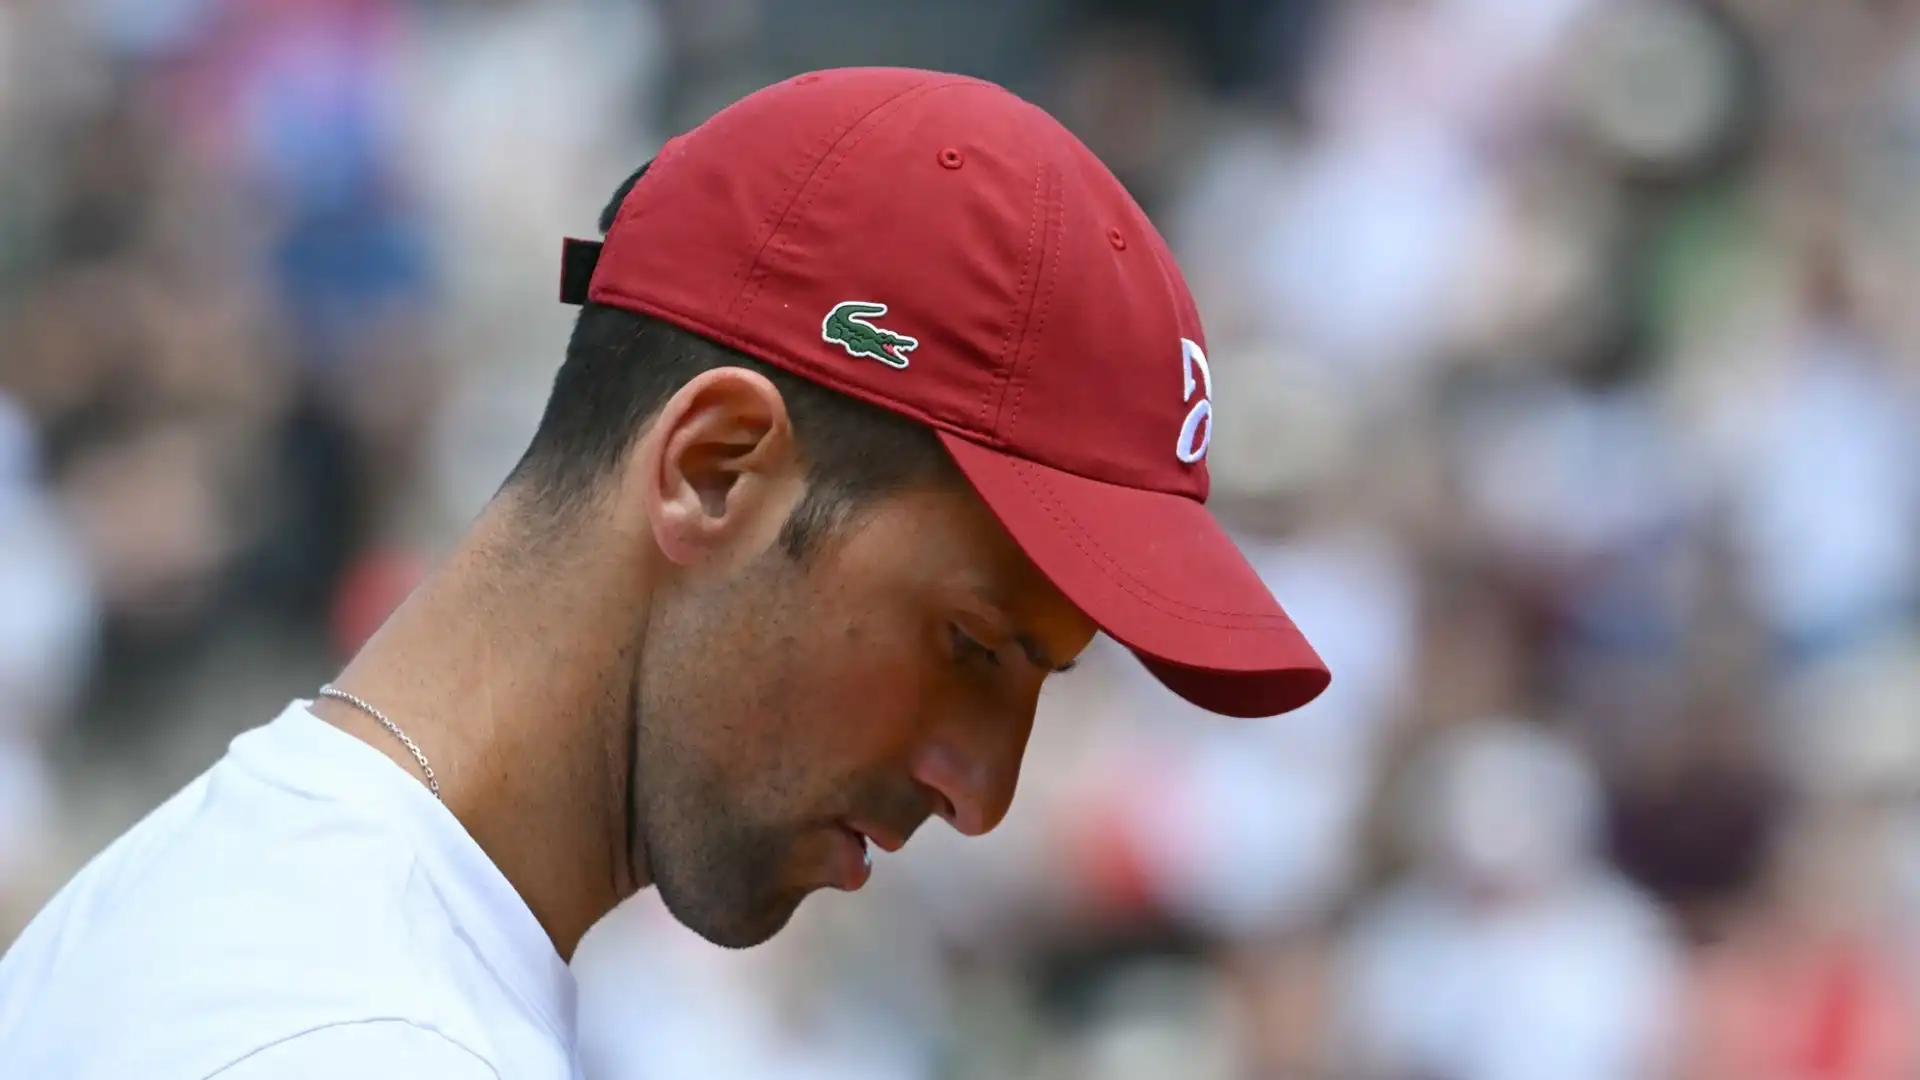 Novak Djokovic è tornato ad allenarsi al Foro Italico il giorno dopo lo spiacevole episodio avvenuto al termine della partita contro Moutet